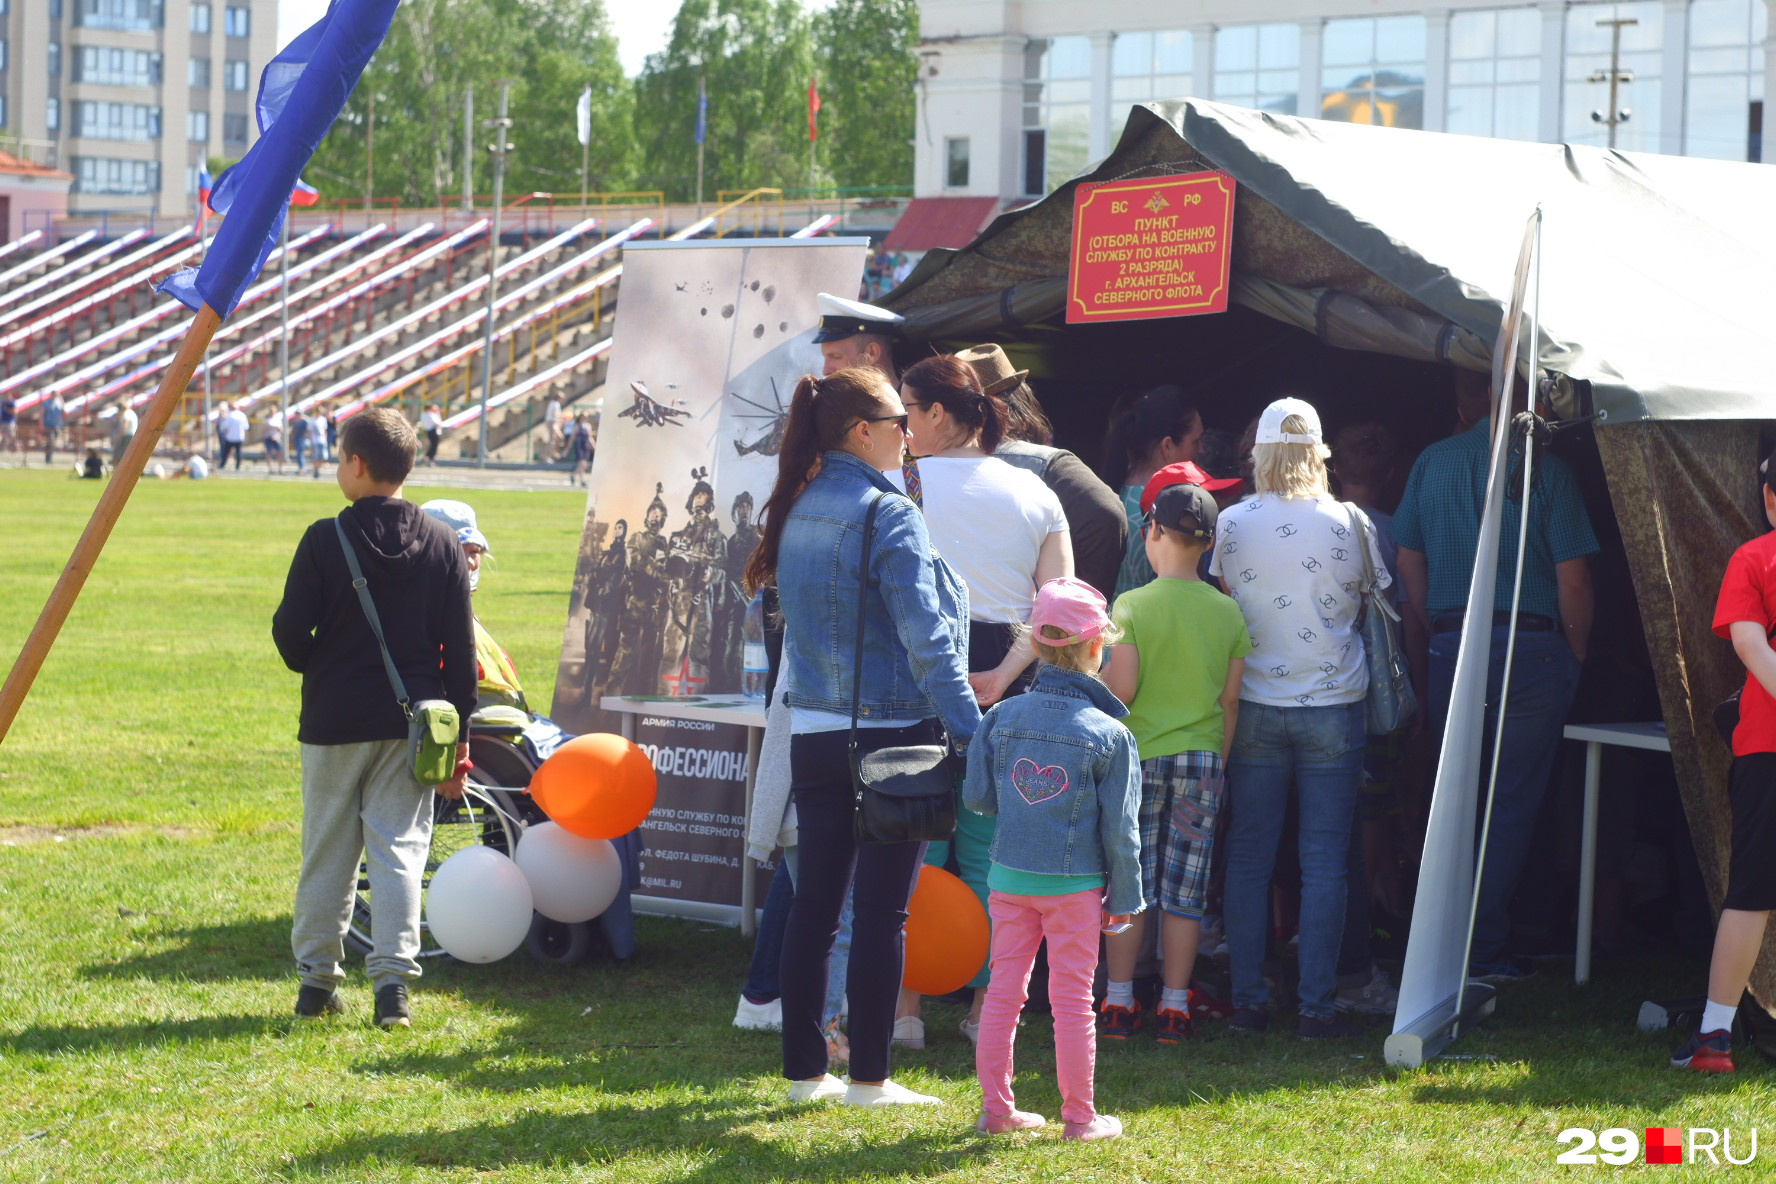 На фестивале УМВД работала палатка, в которой приглашали записаться на <a href="https://29.ru/text/gorod/2022/06/12/71405336/" class="_" target="_blank">контрактную службу</a>